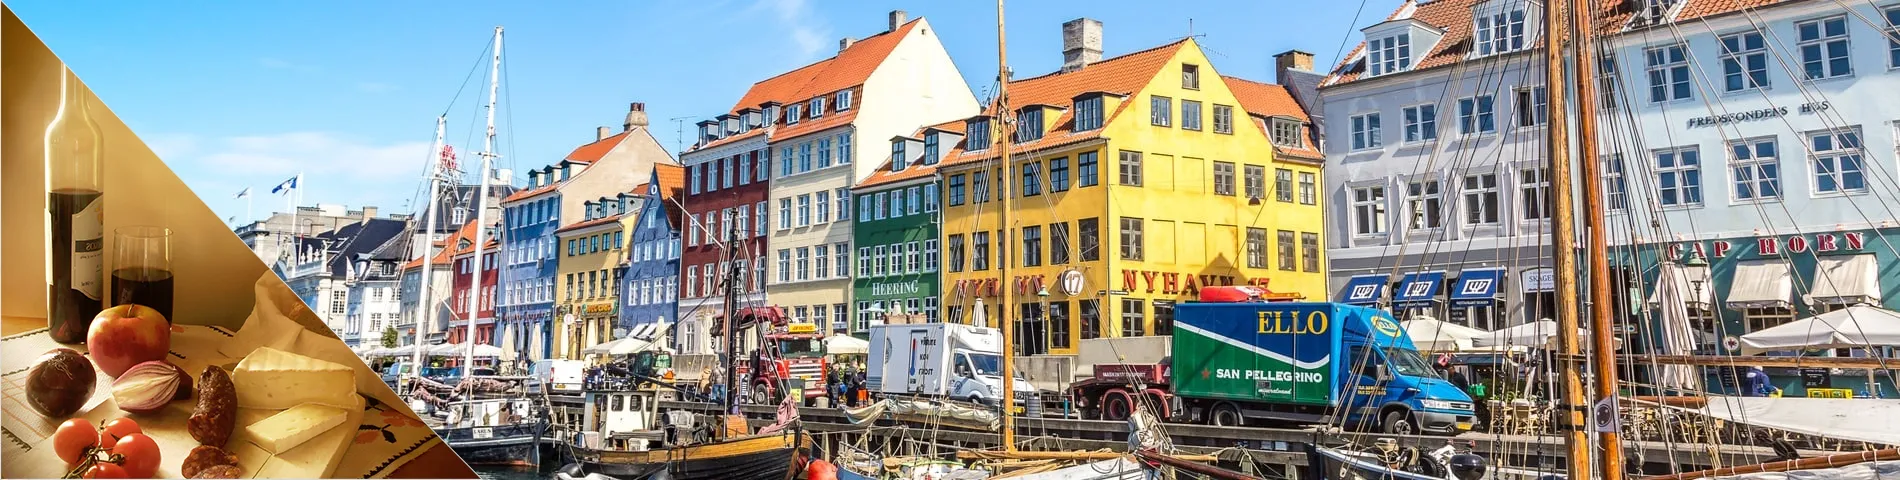 Köpenhamn - Danska & kultur